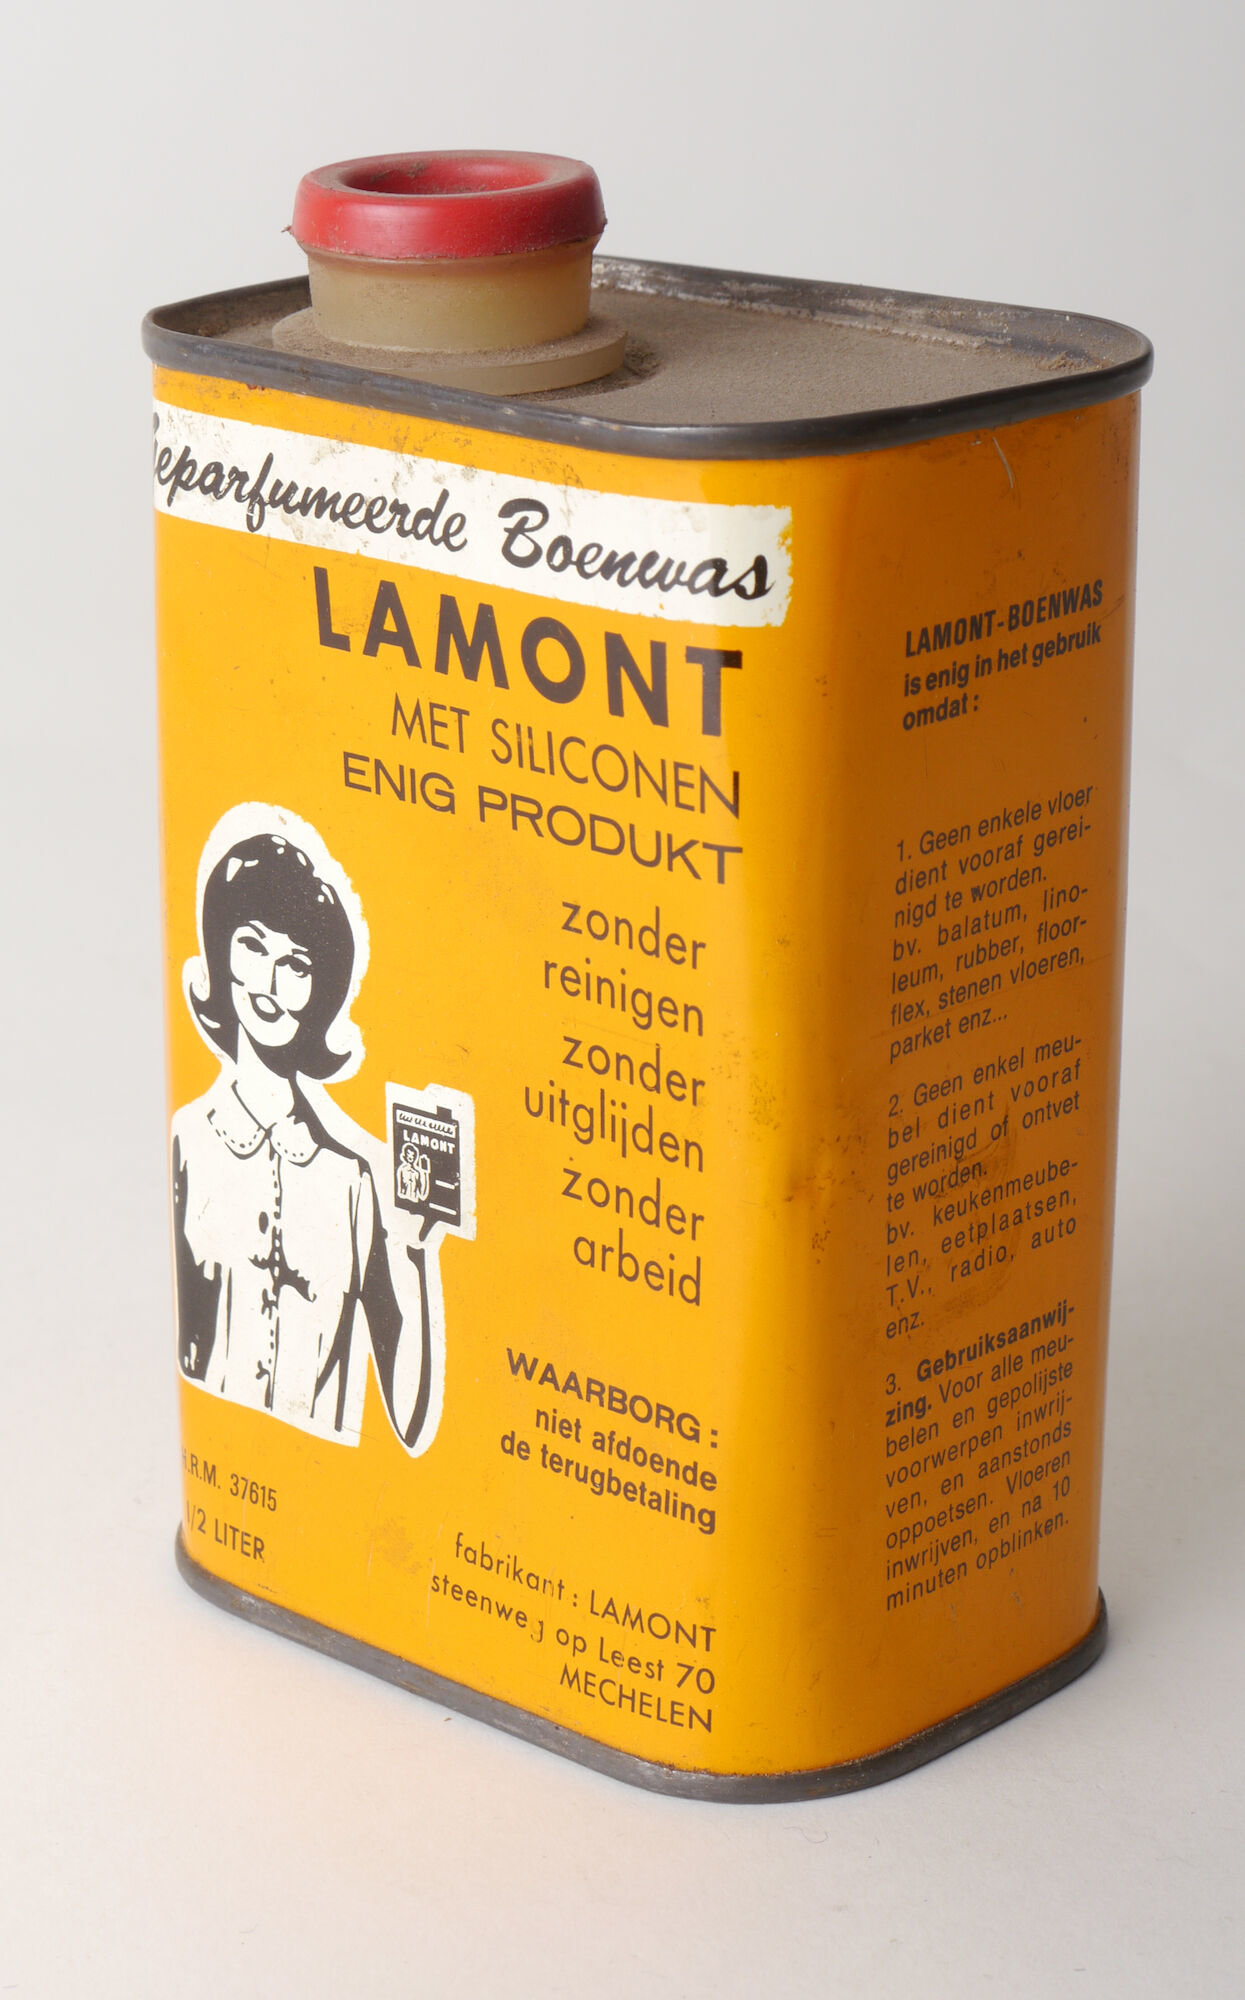 Blik met boenwas van het merk Lamont